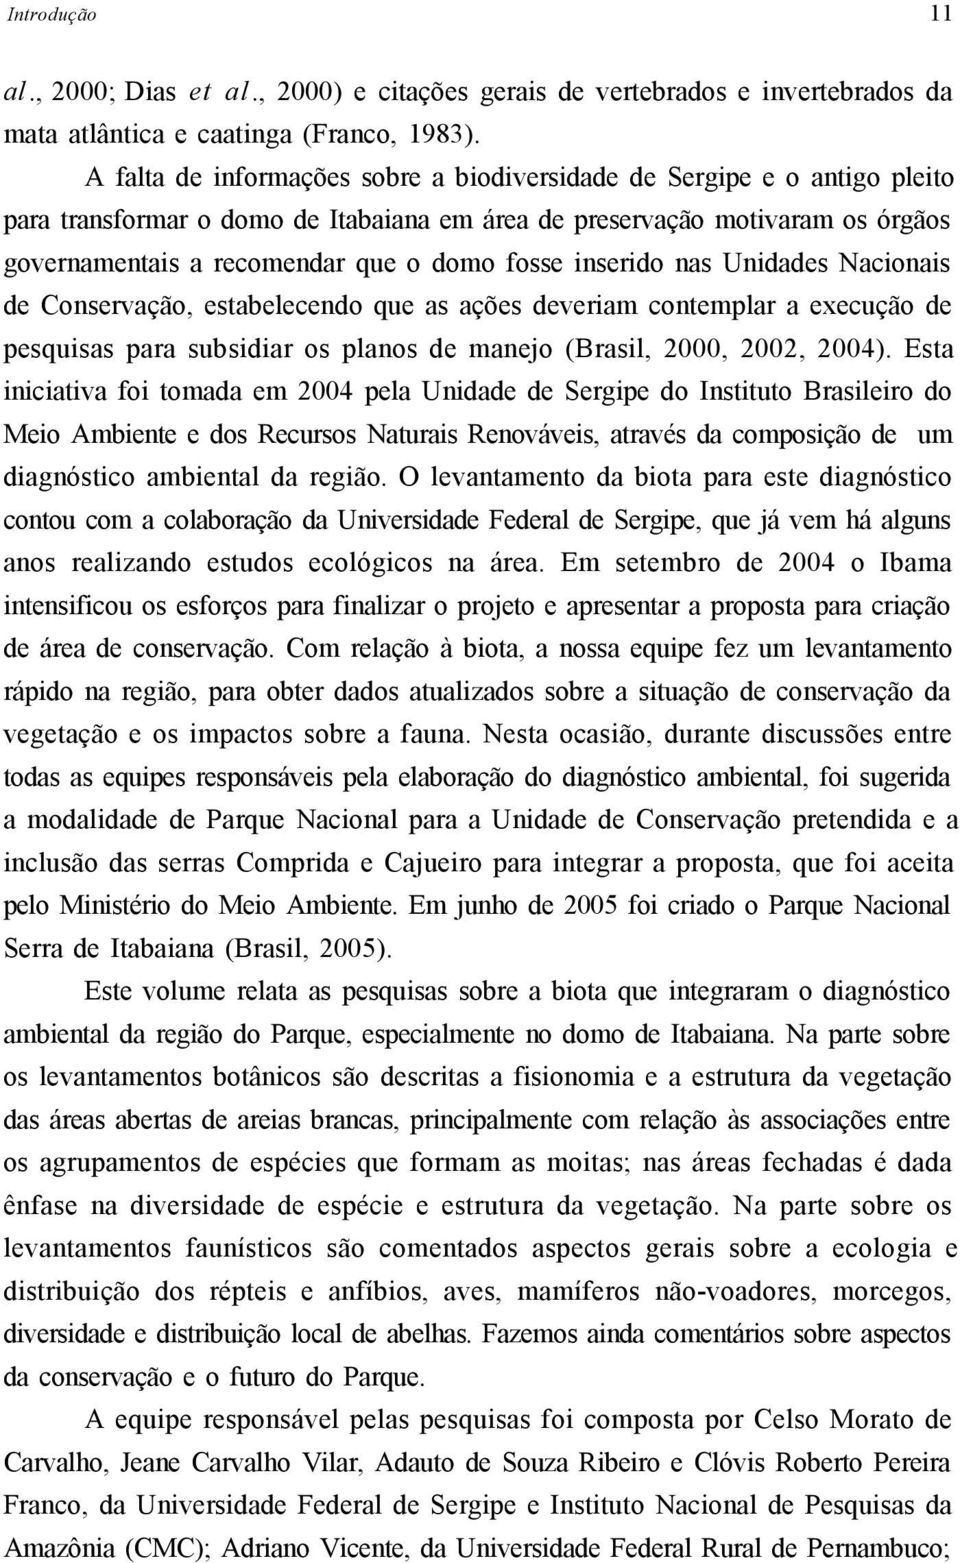 inserido nas Unidades Nacionais de Conservação, estabelecendo que as ações deveriam contemplar a execução de pesquisas para subsidiar os planos de manejo (Brasil, 2000, 2002, 2004).